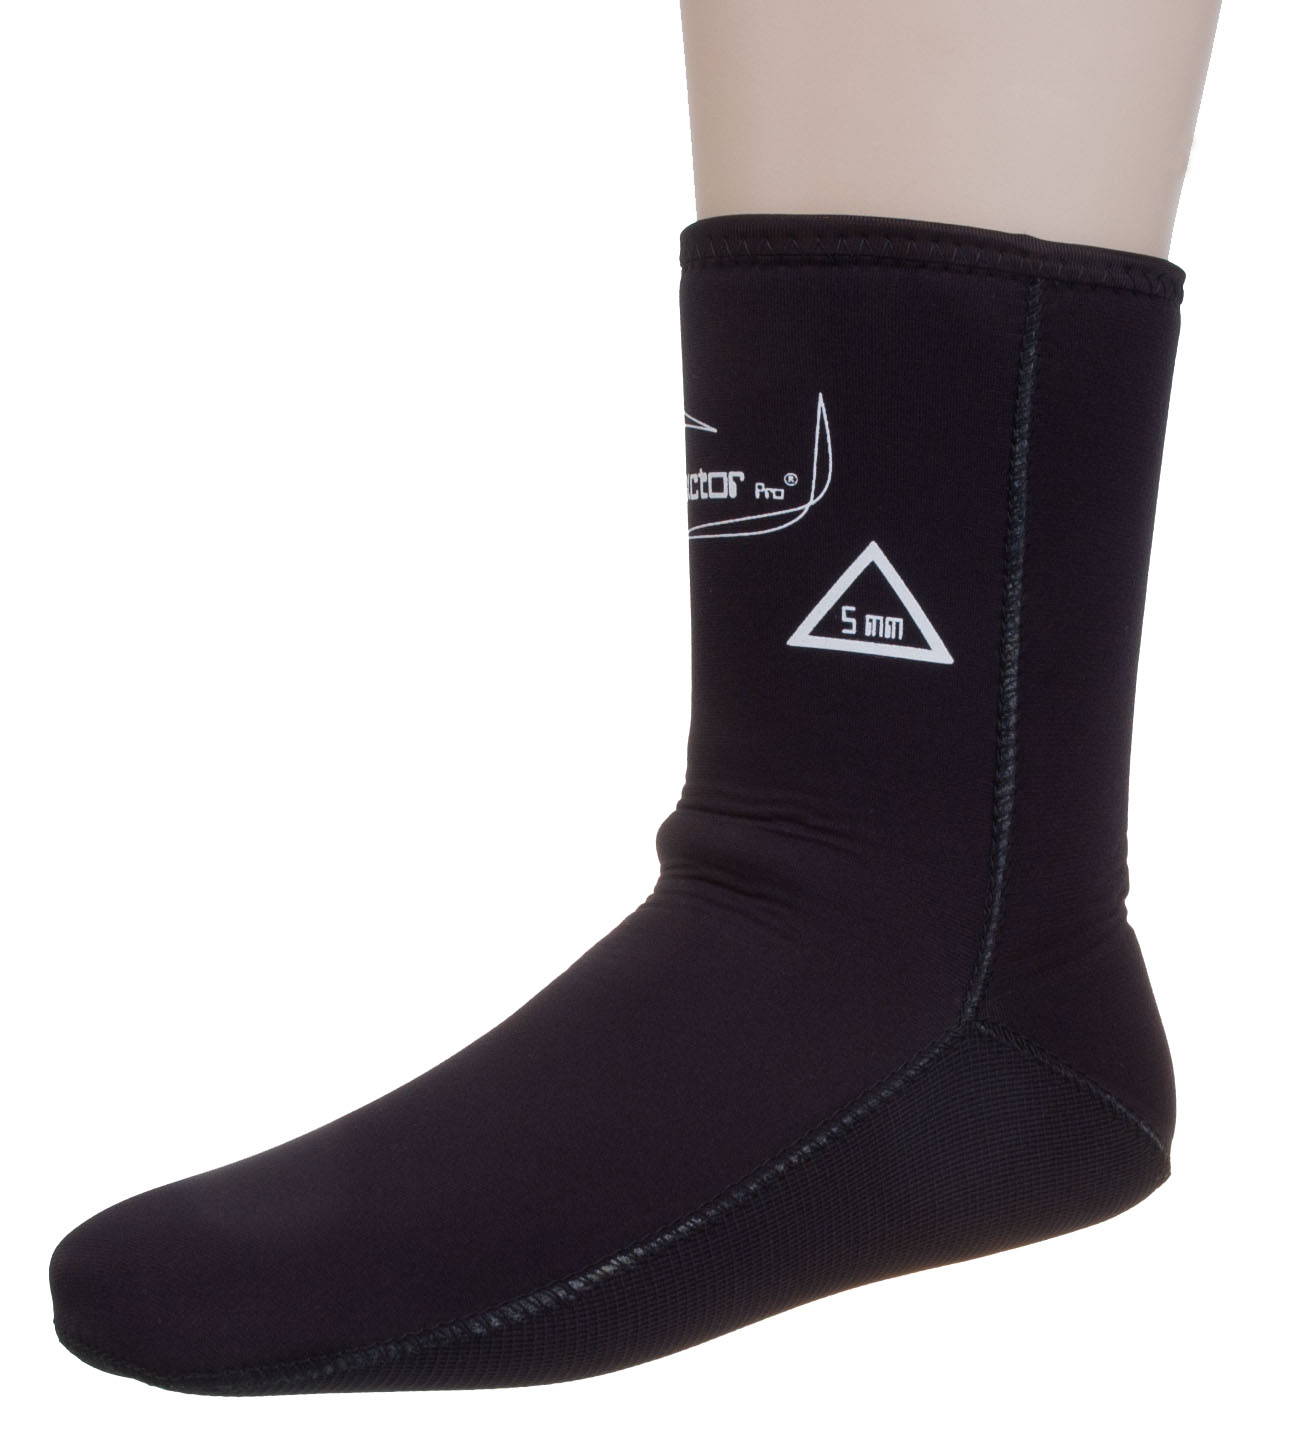 Schnorcheln und Wassersport Frauen QKURT Tauchsocken,3mm Neopren-Socken für Tauchen Anti-Rutsch-Flossen-Socken für Männer 